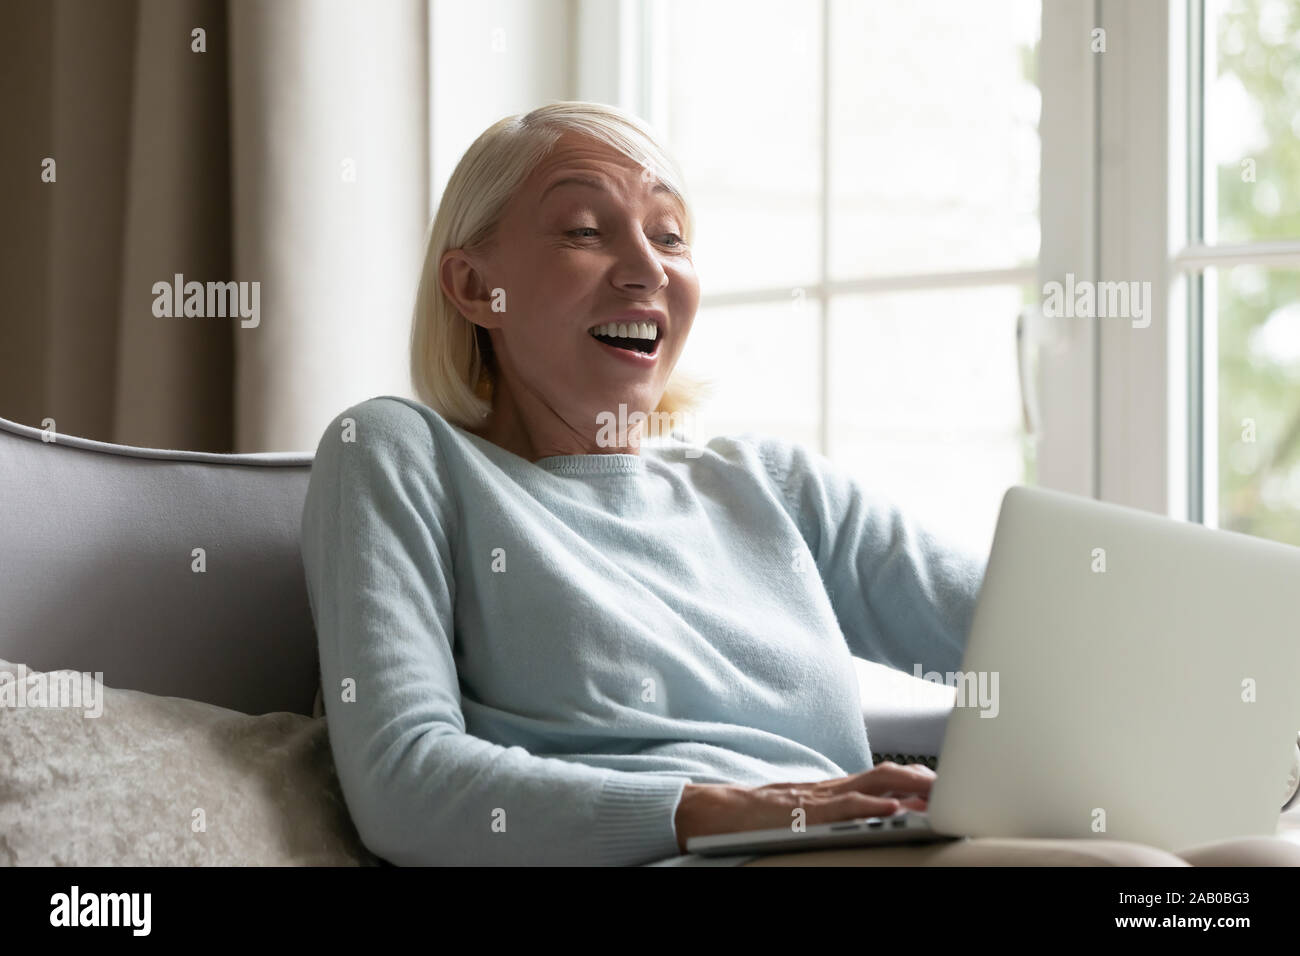 Frau auf der Suche nach Bildschirm fühlt sich schockiert unglaubliches Angebot erhalten Stockfoto